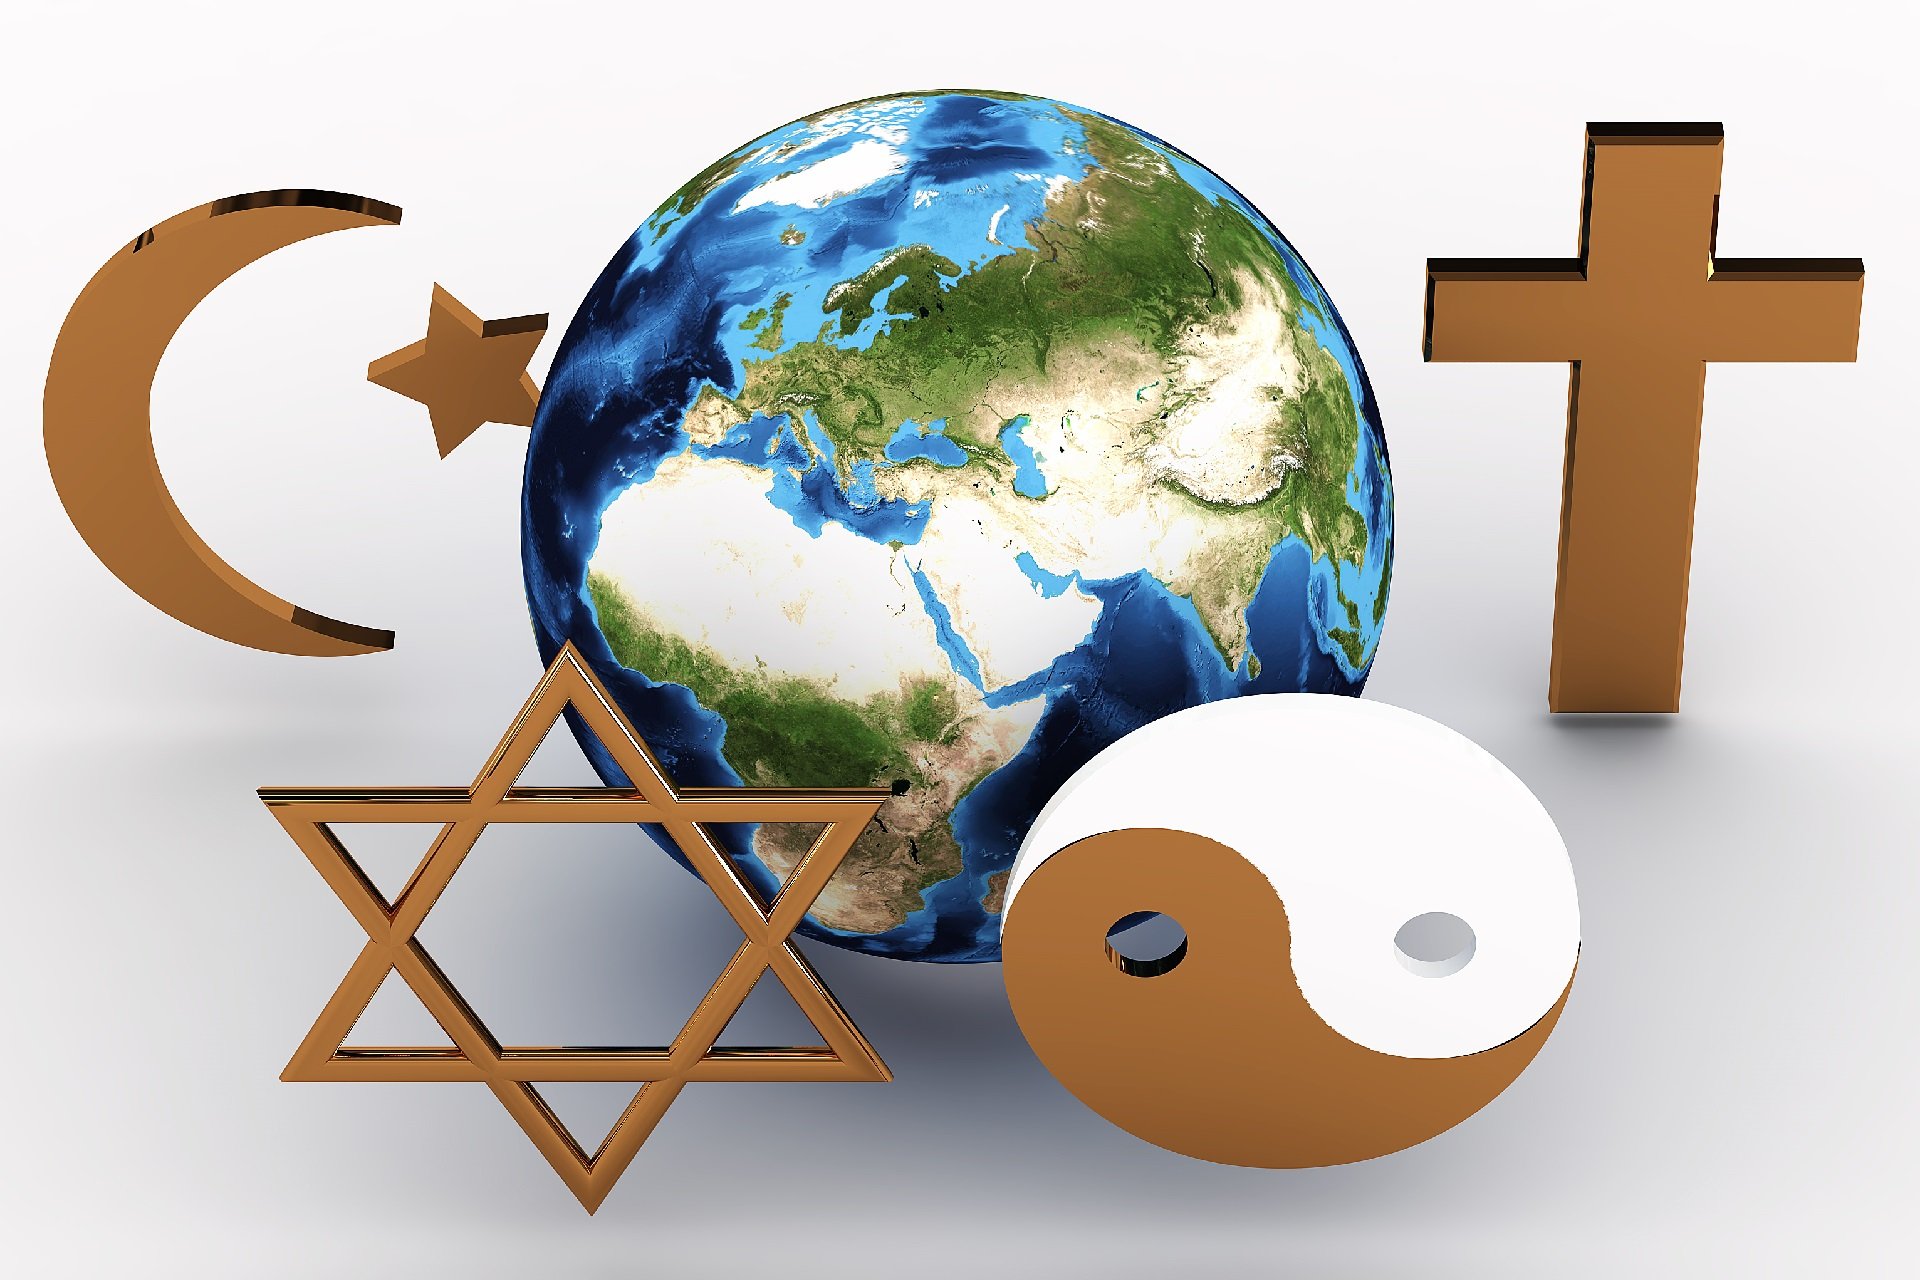 Религии - Глобализация
способствует росту религиозной терпимости и принятию различных культур и вероисповеданий, что благотво